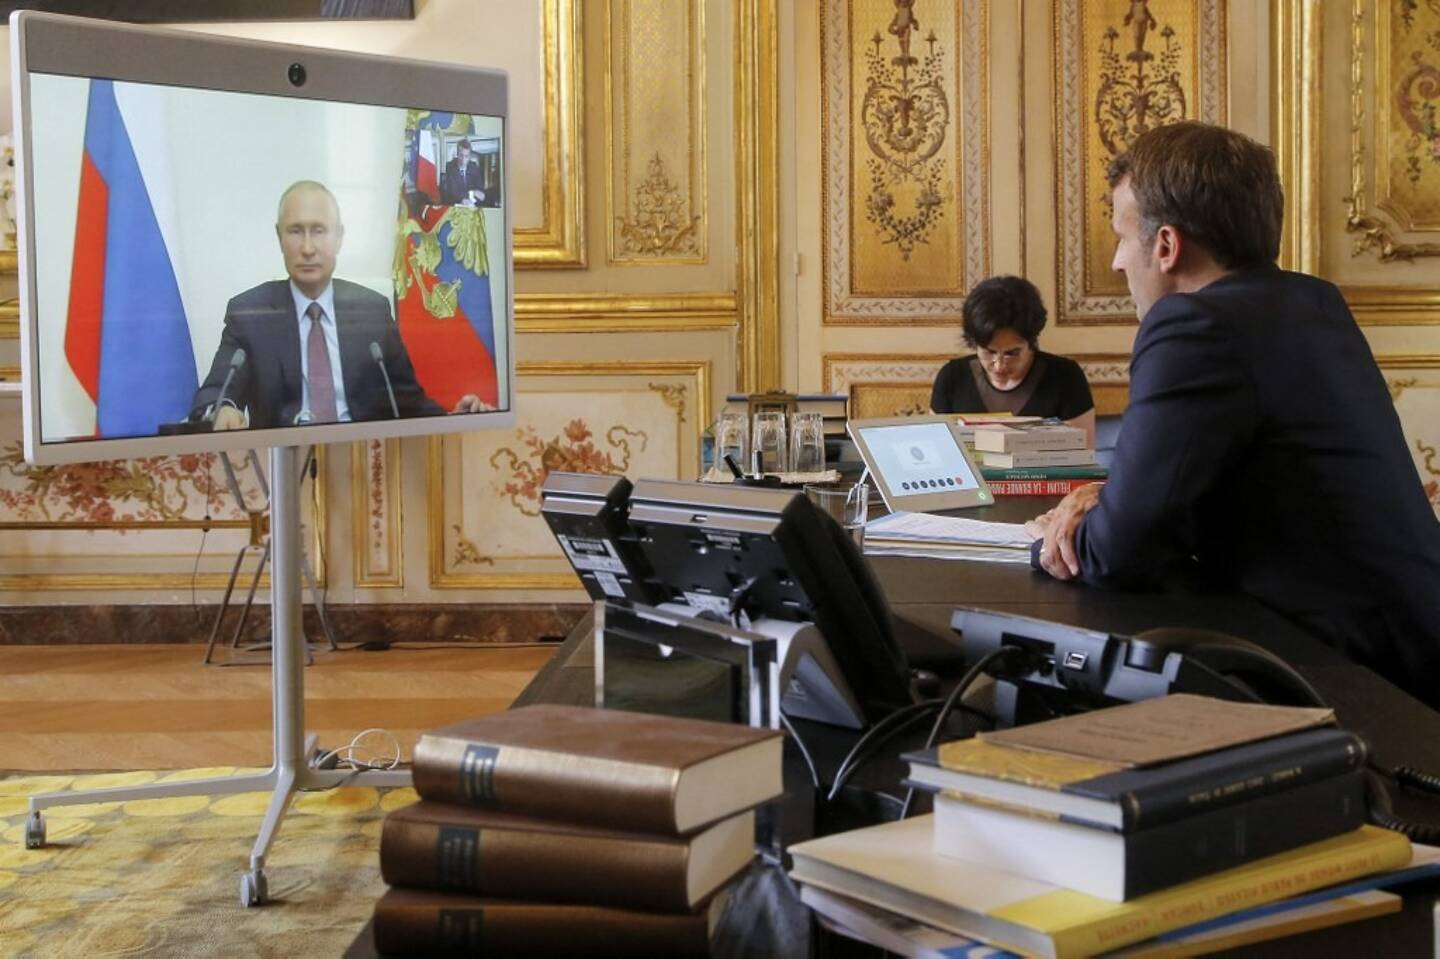 Les échanges téléphoniques entre Macron et Poutine